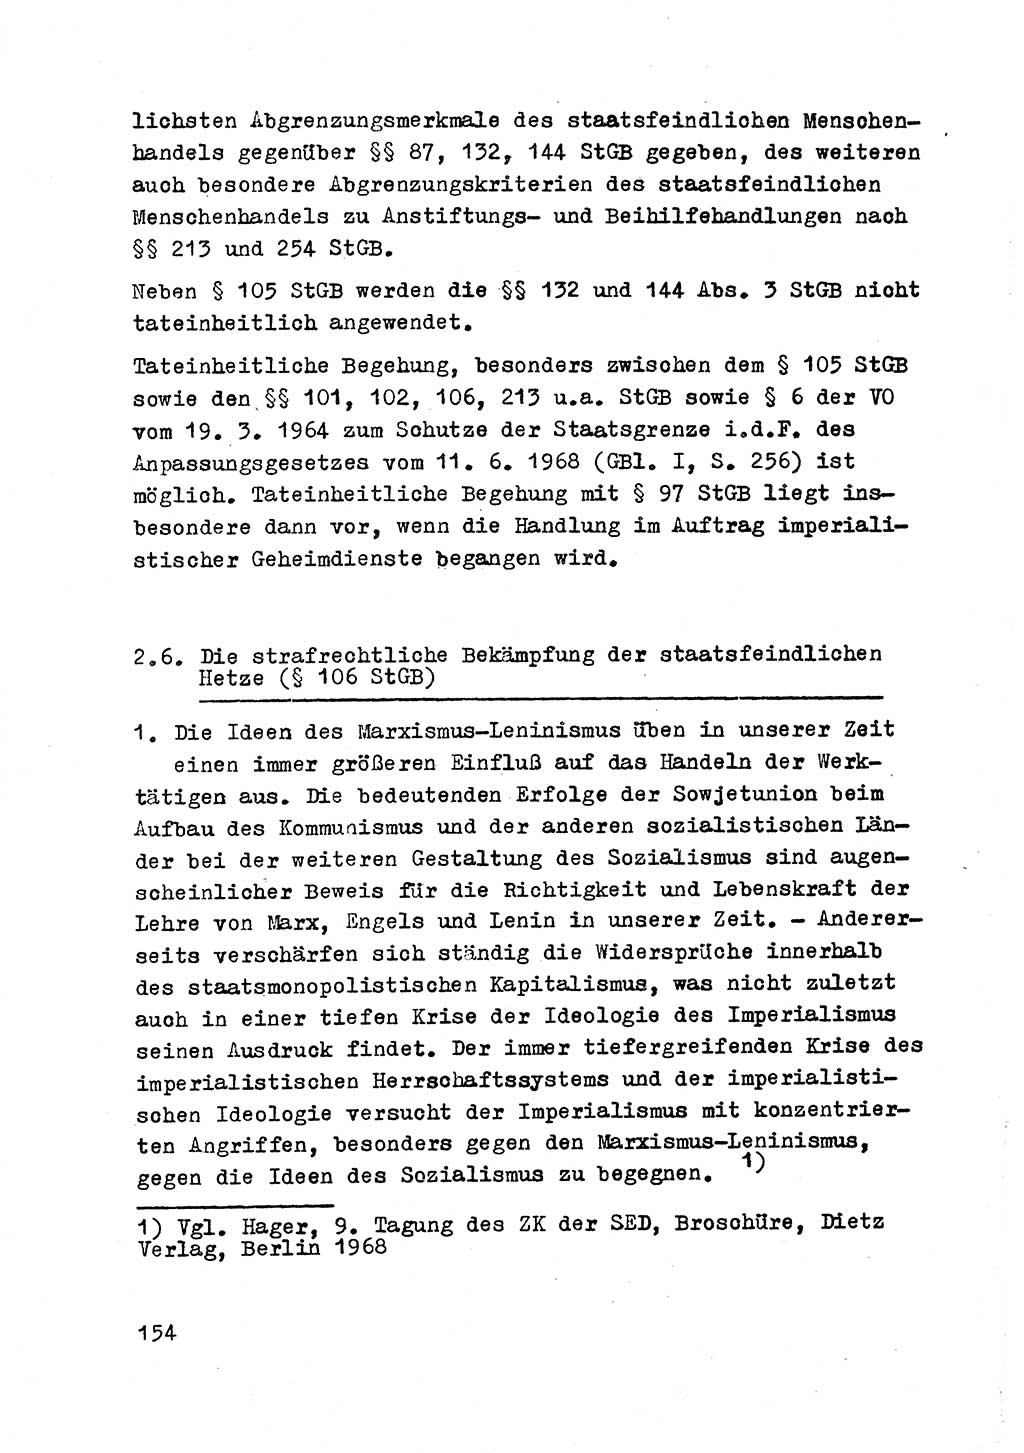 Strafrecht der DDR (Deutsche Demokratische Republik), Besonderer Teil, Lehrmaterial, Heft 2 1969, Seite 154 (Strafr. DDR BT Lehrmat. H. 2 1969, S. 154)